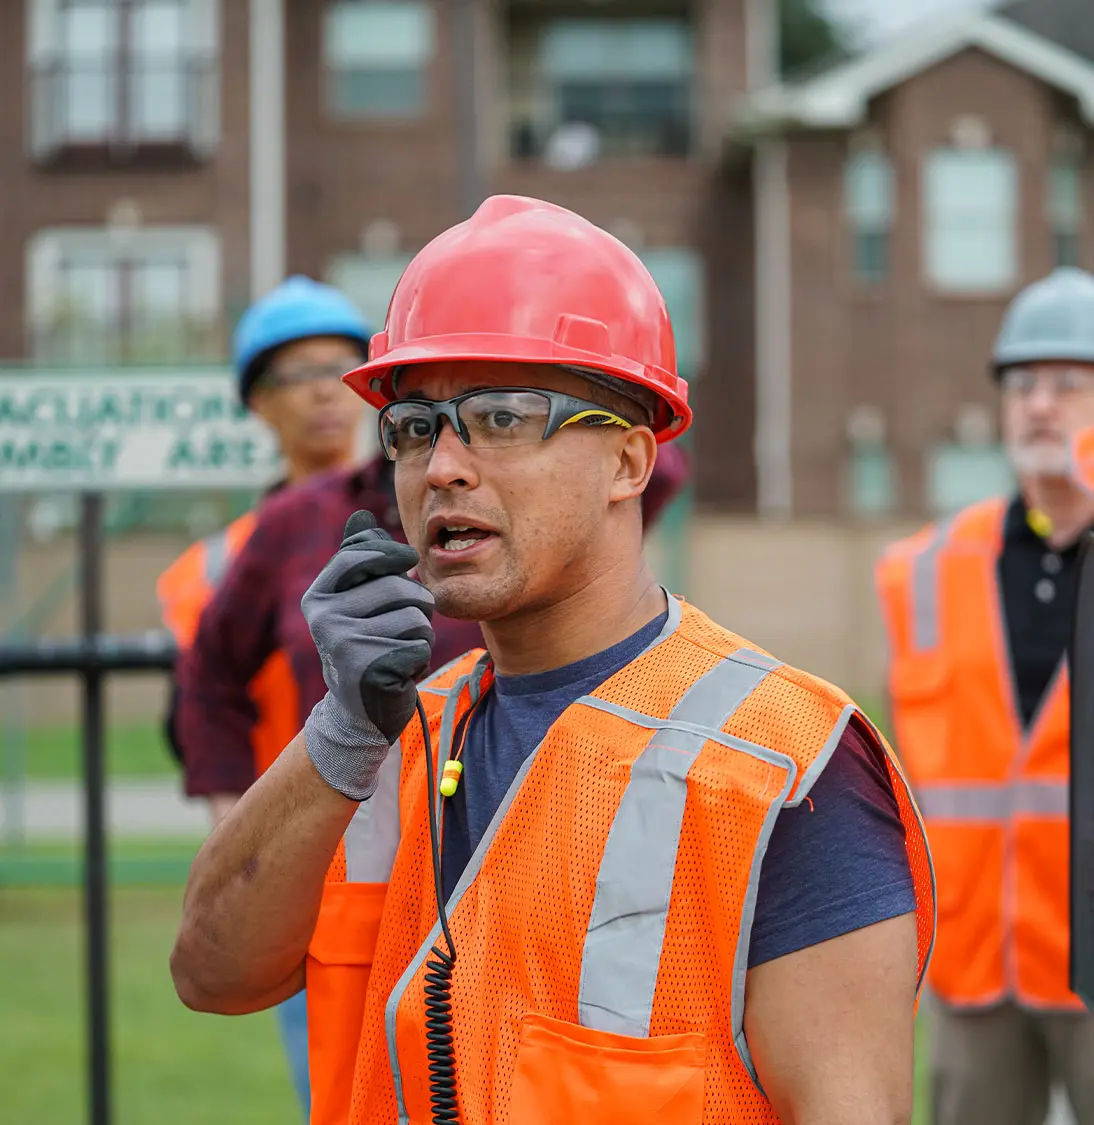 Worker in high vis speaking into handheld radio